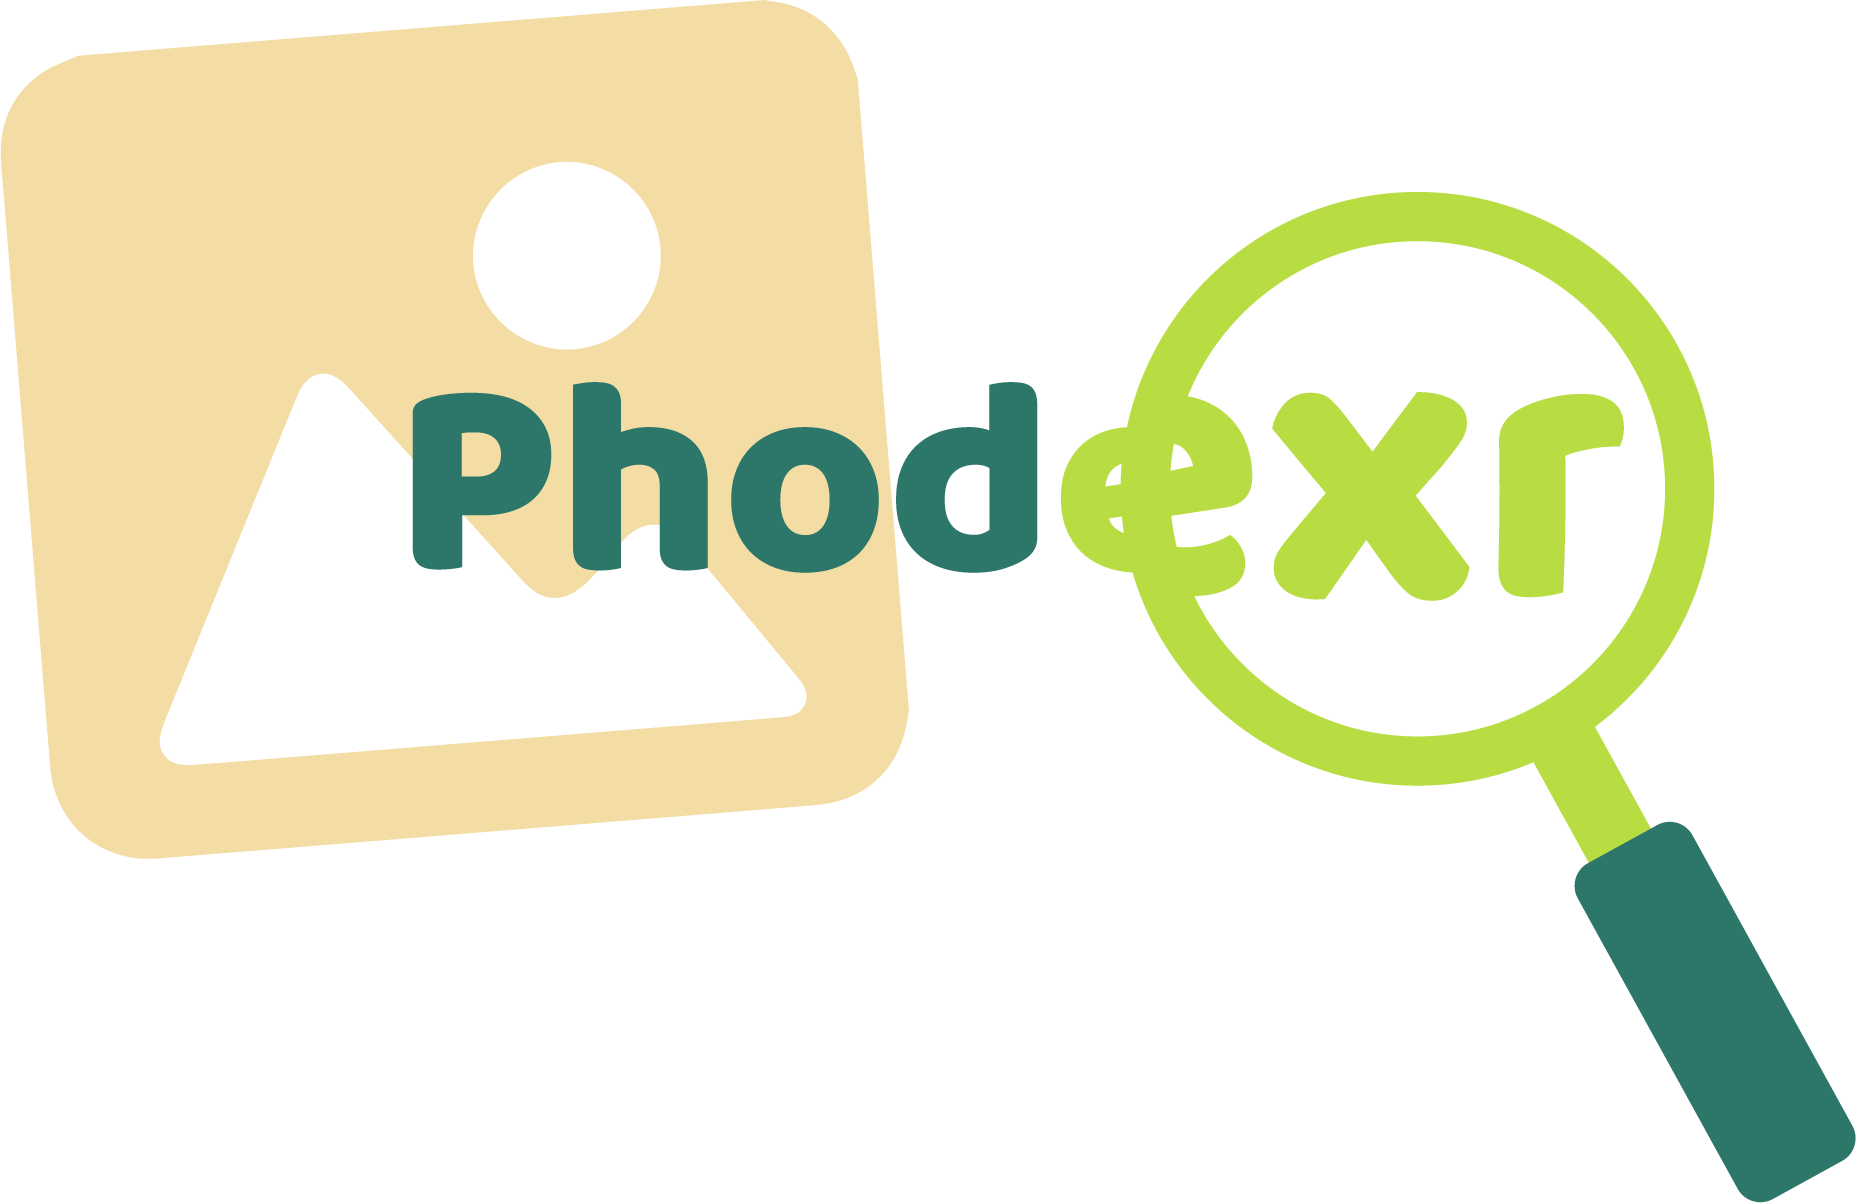 Phodexr